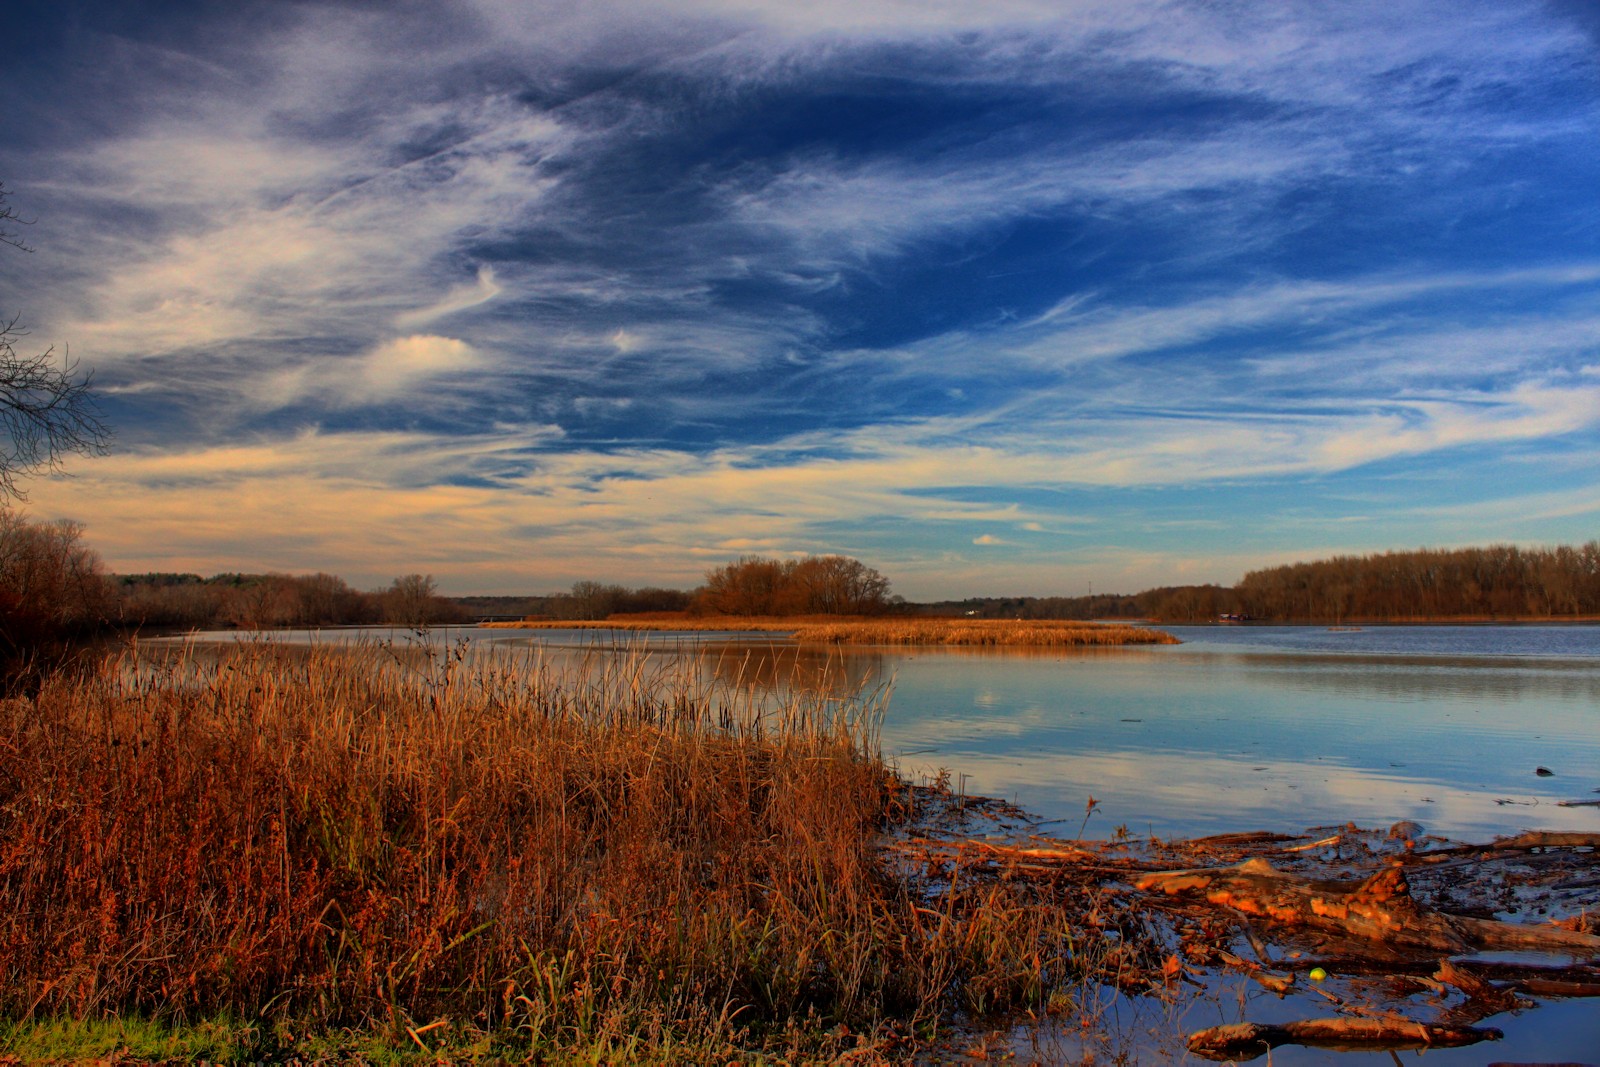 River Landscape in HDR<BR>November 25, 2011